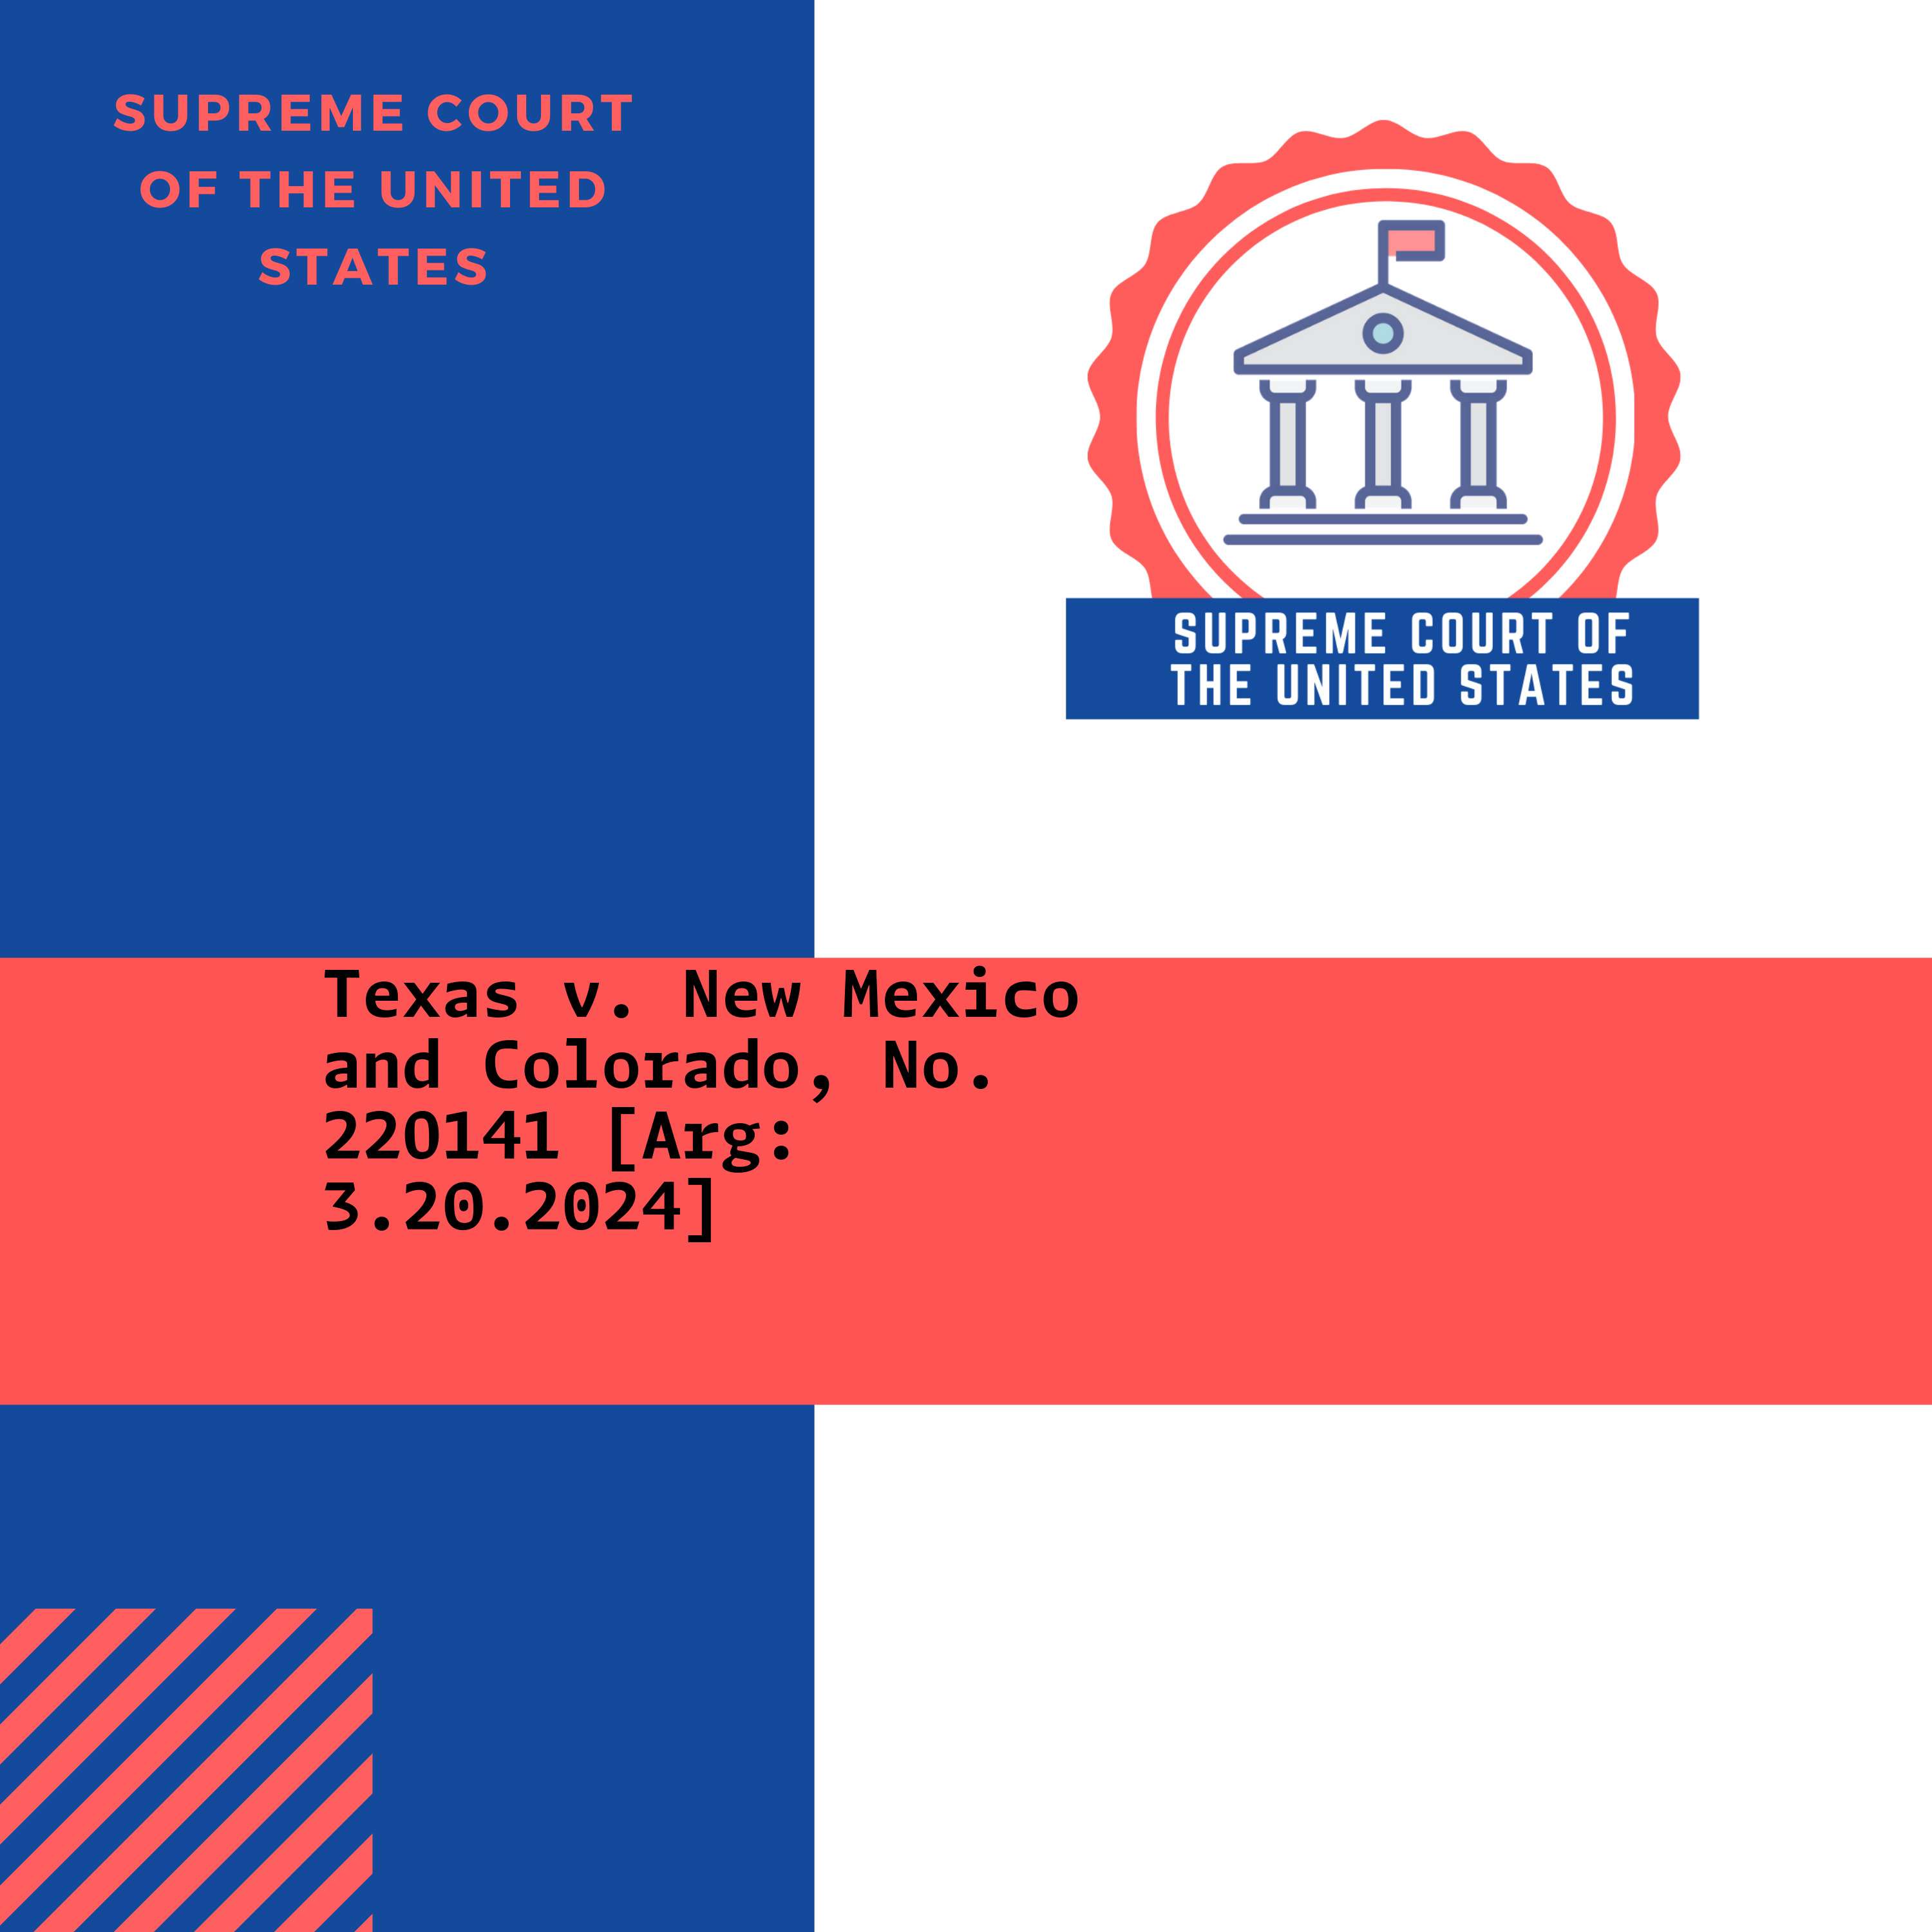 Texas v. New Mexico and Colorado, No. 22O141 [Arg: 3.20.2024]